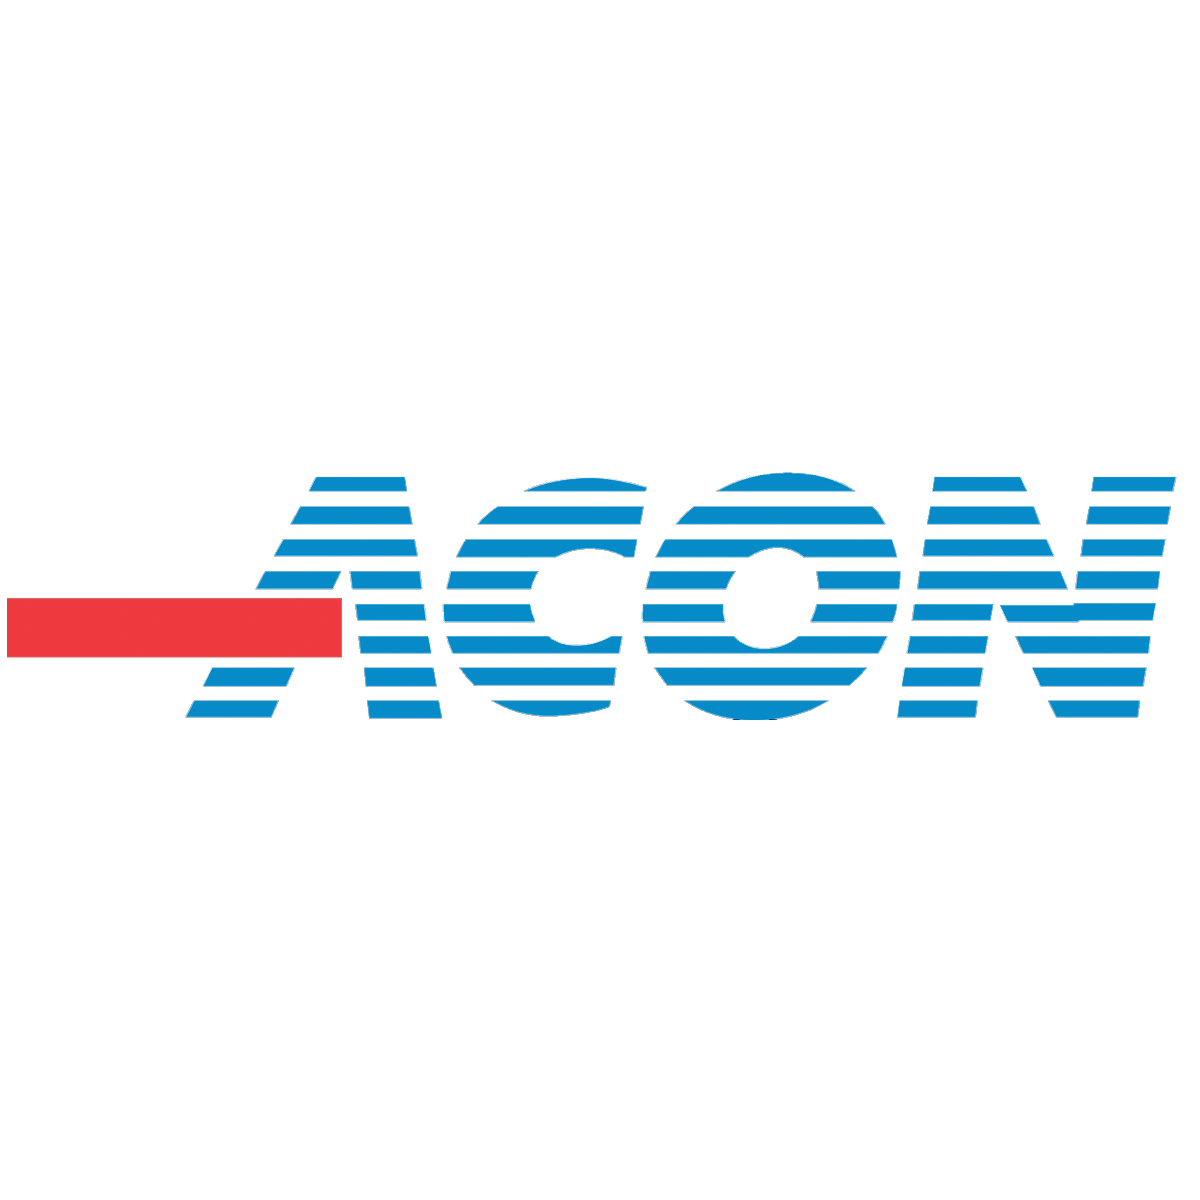 Acon